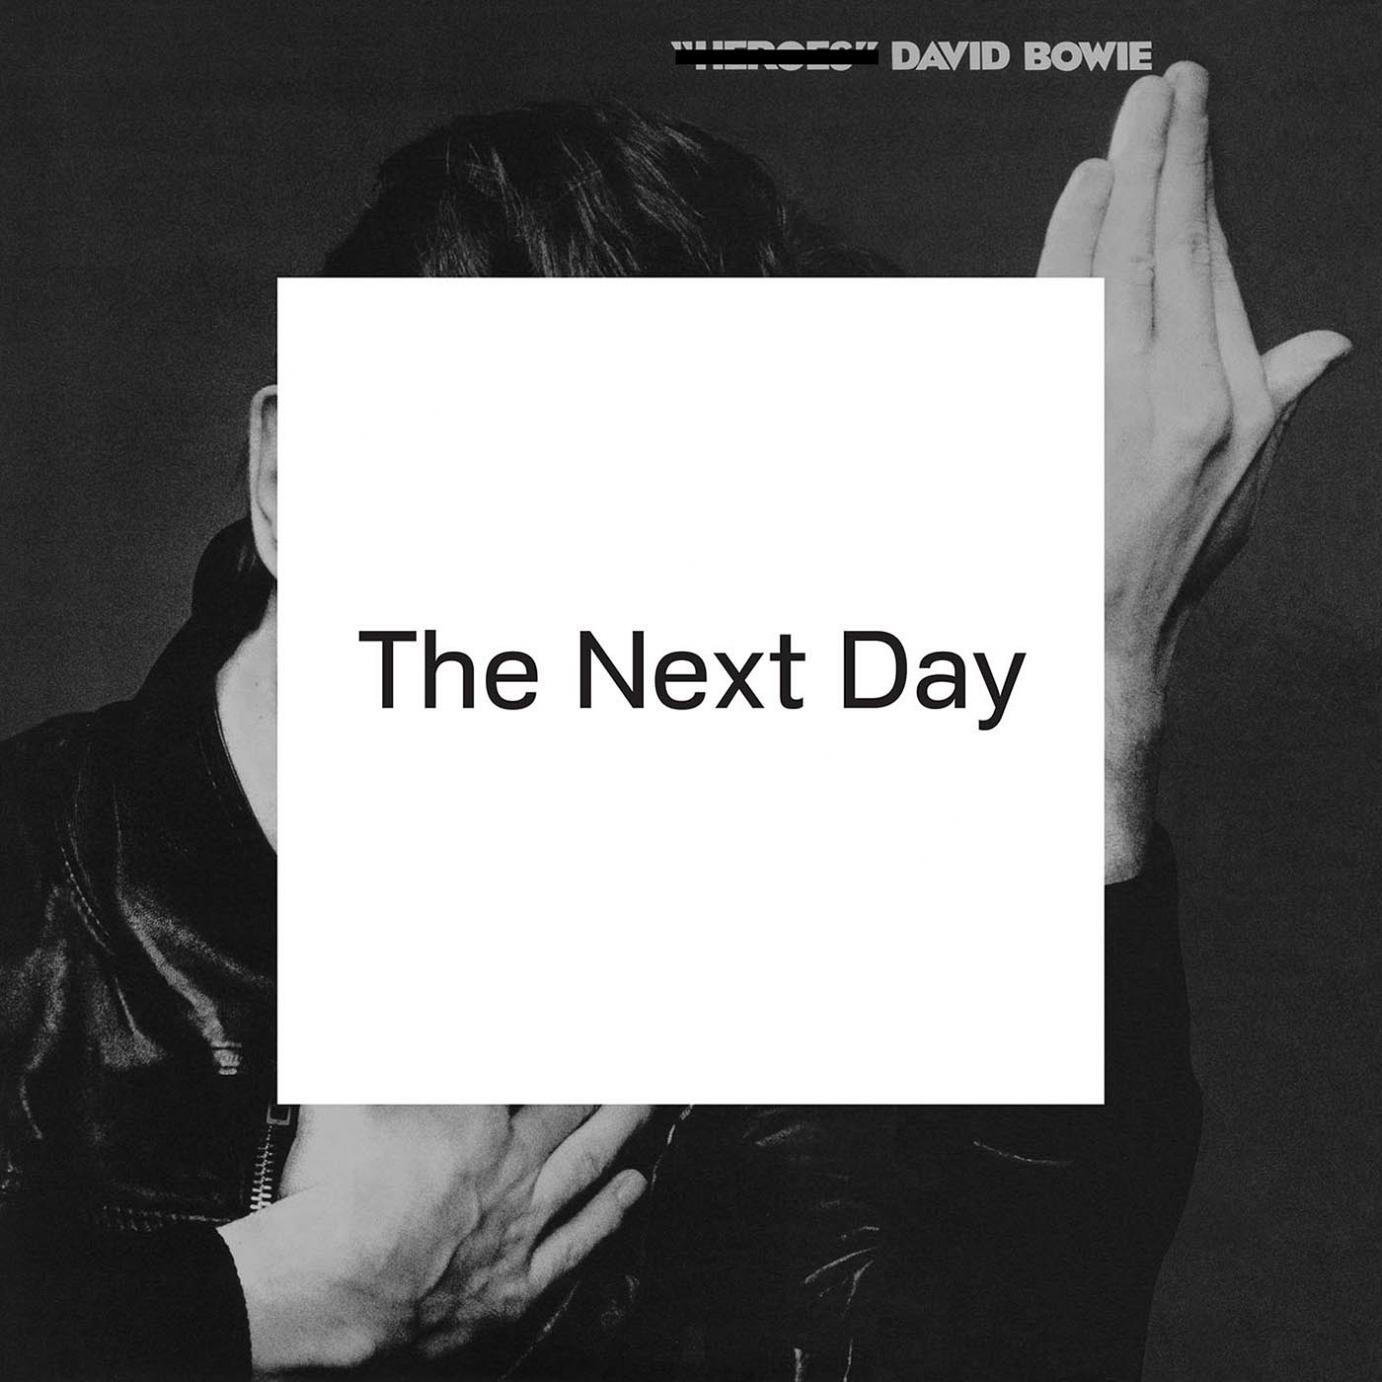 Nach zehn Jahren mit viel Licht und ein bißchen Schatten zurück: David Bowie “The Next Day”